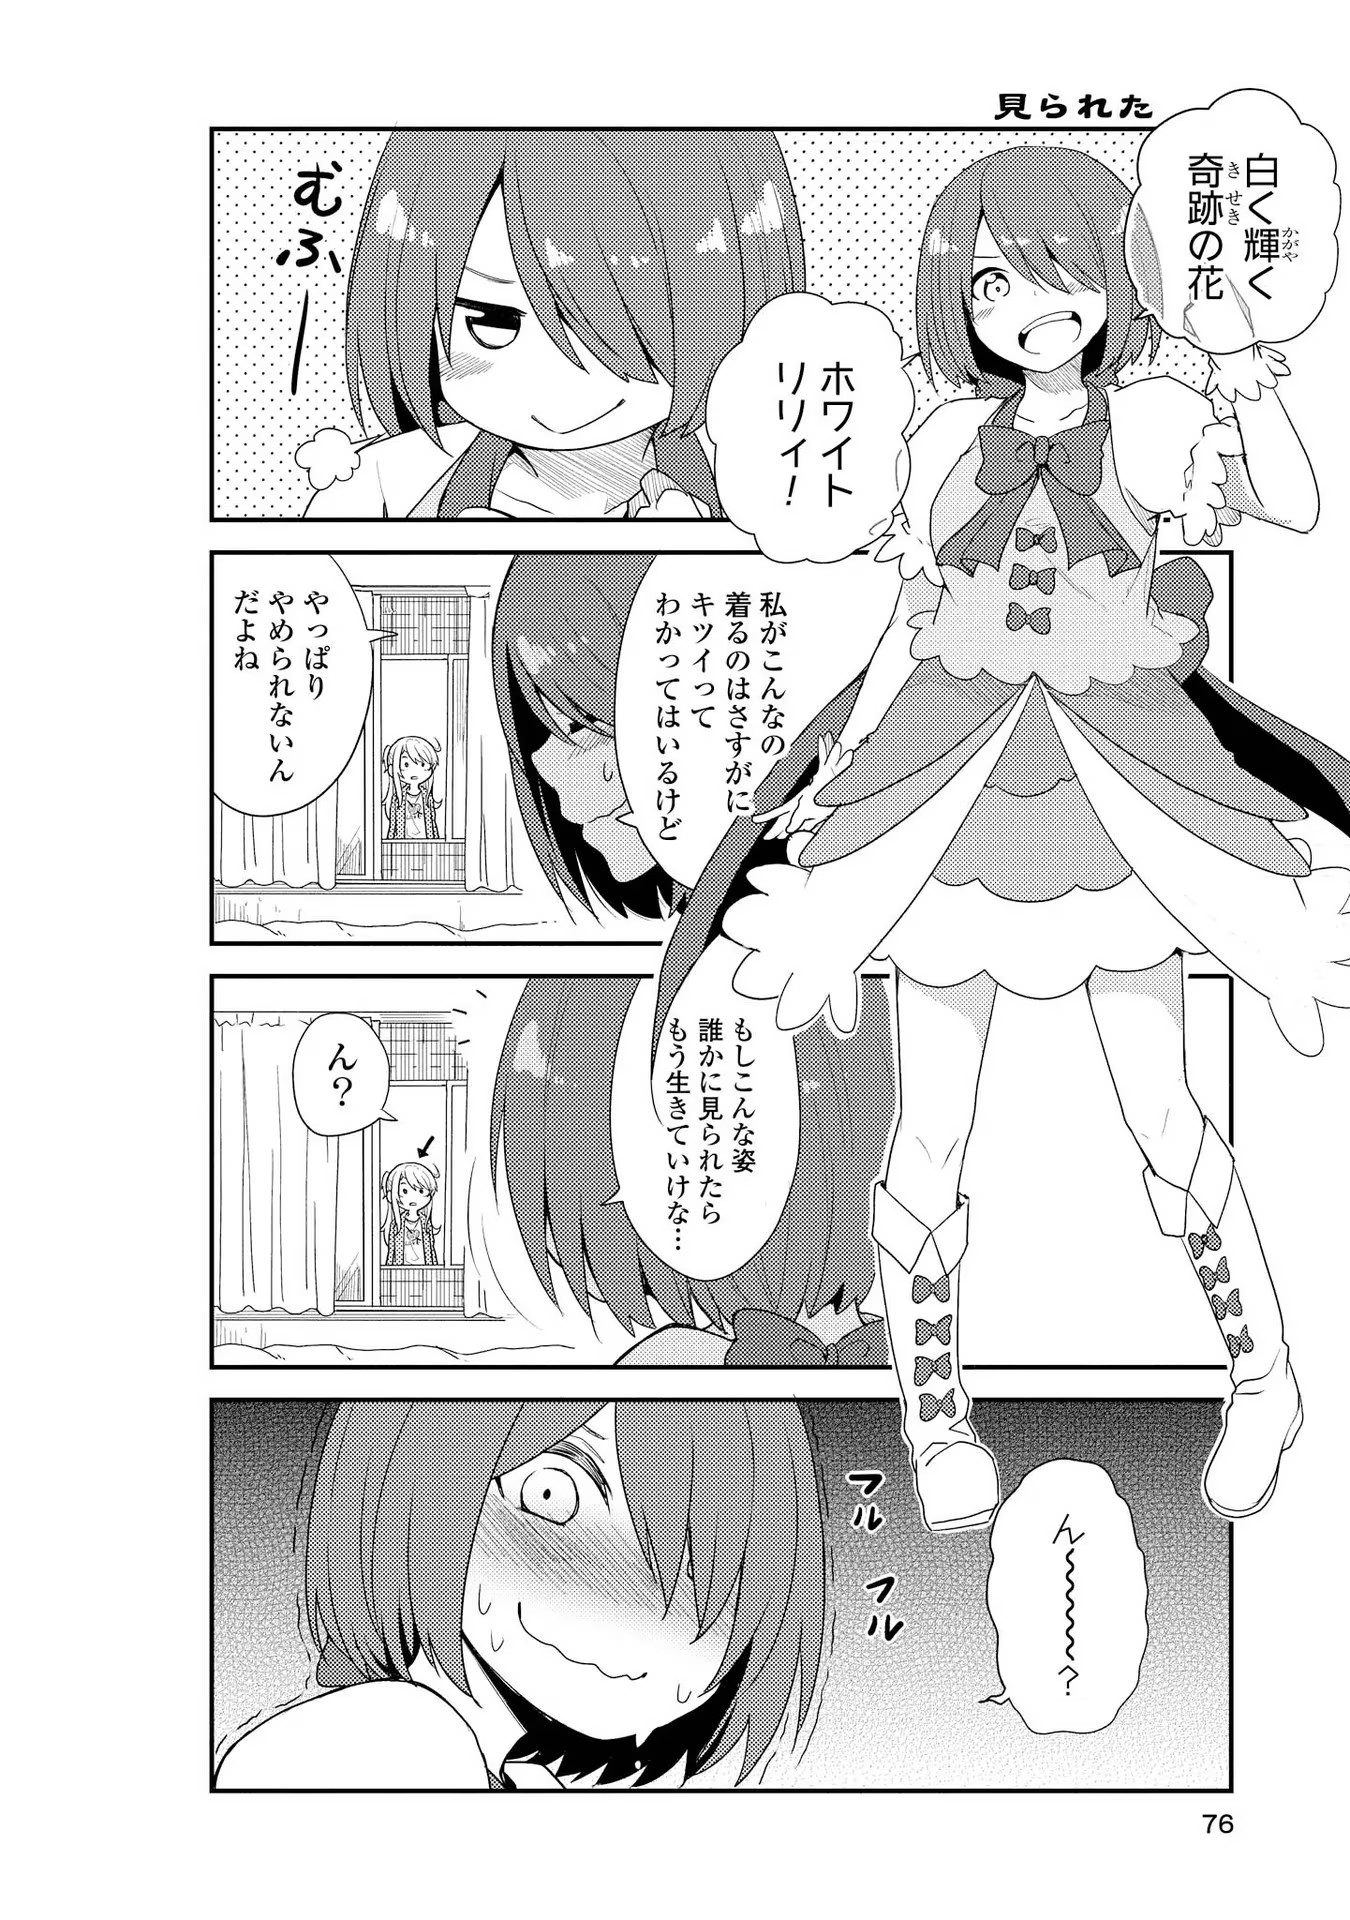 Watashi ni Tenshi ga Maiorita! - Chapter 5 - Page 4